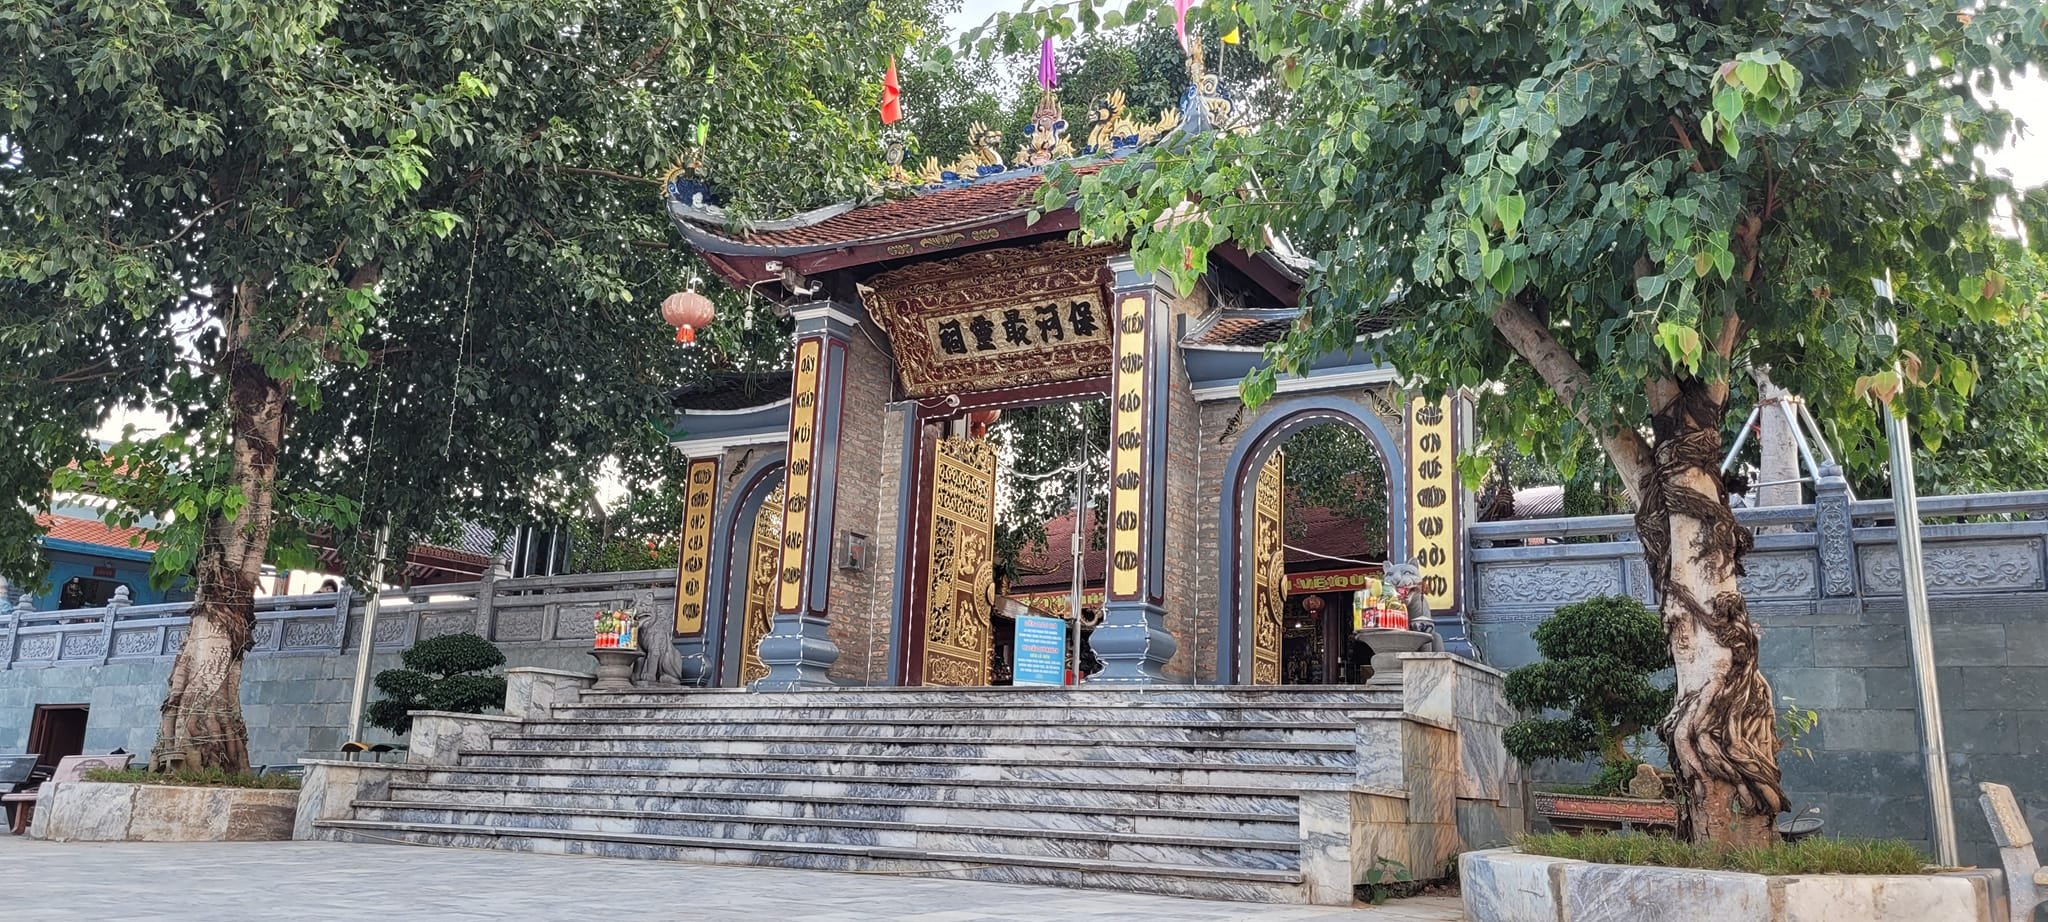 Tài nguyên du lịch nhân văn độc đáo – thành tố chính để Lào Cai thu hút du khách